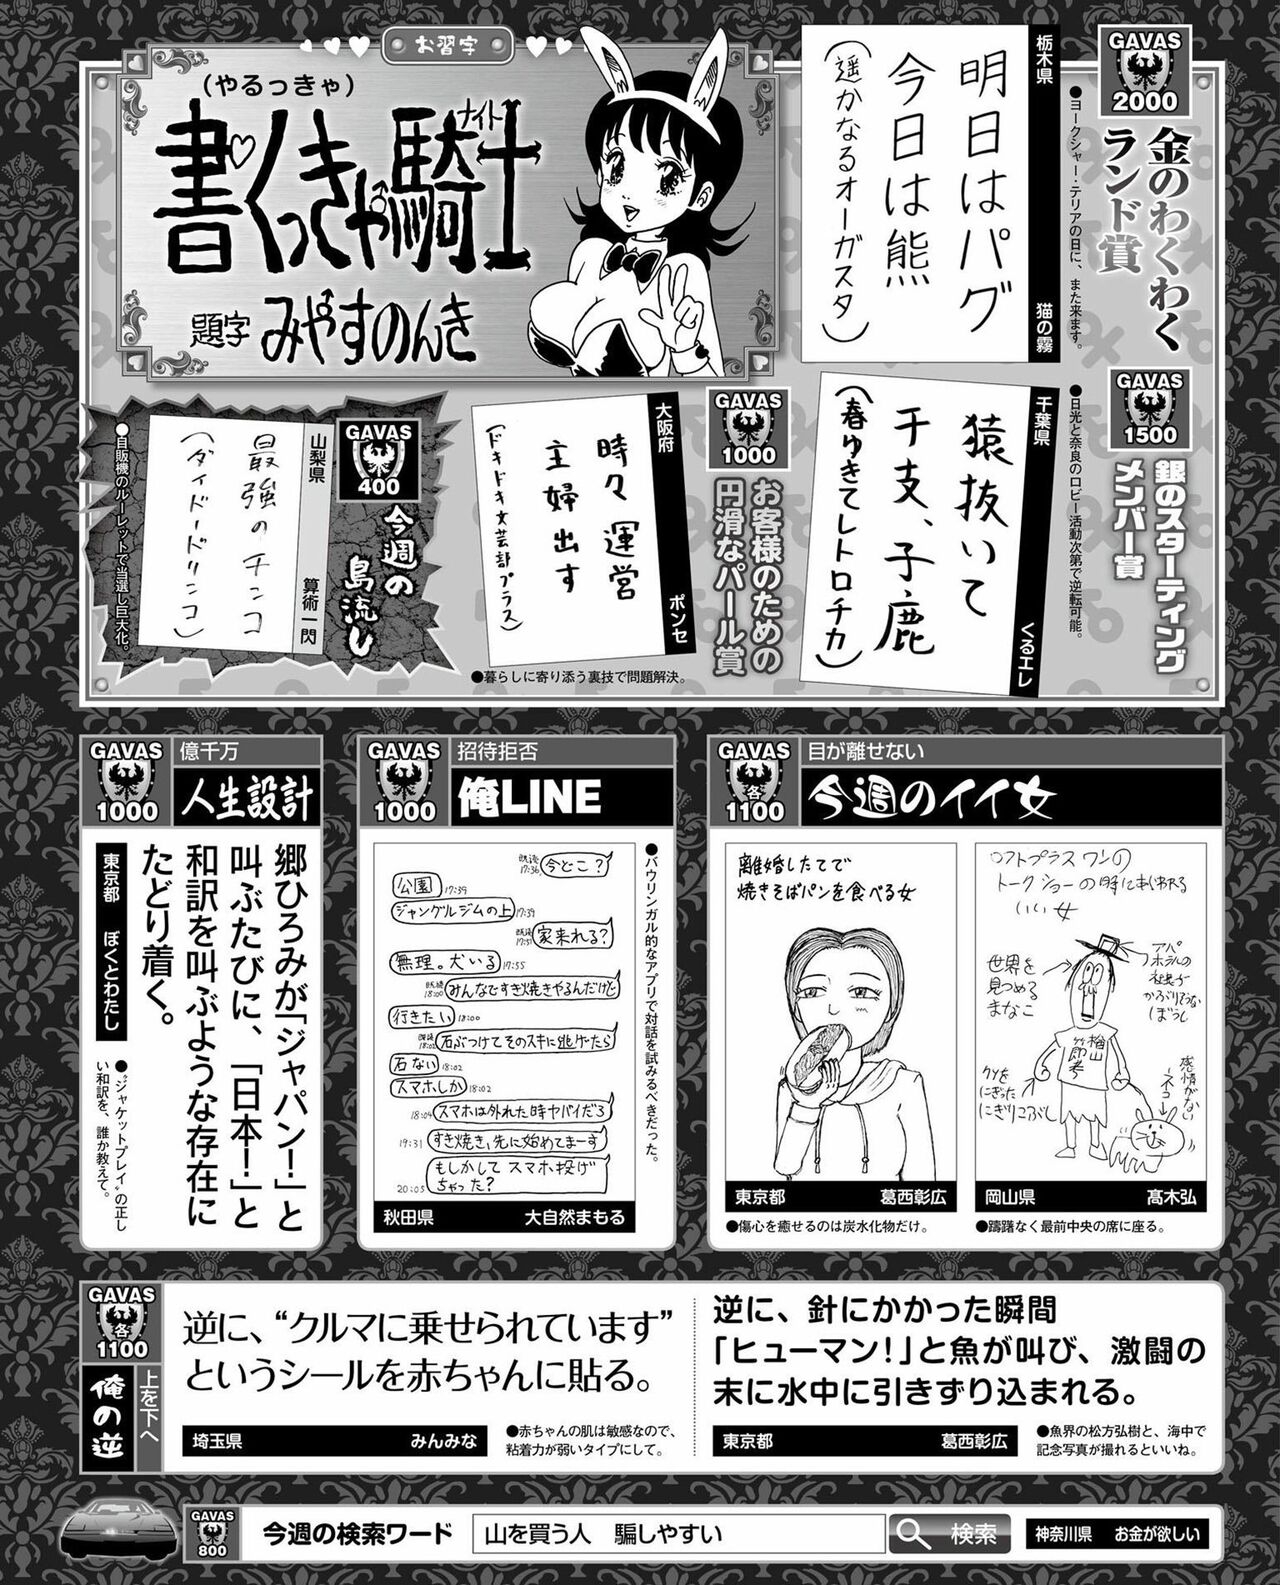 Weekly Famitsu 2022 6 2 51